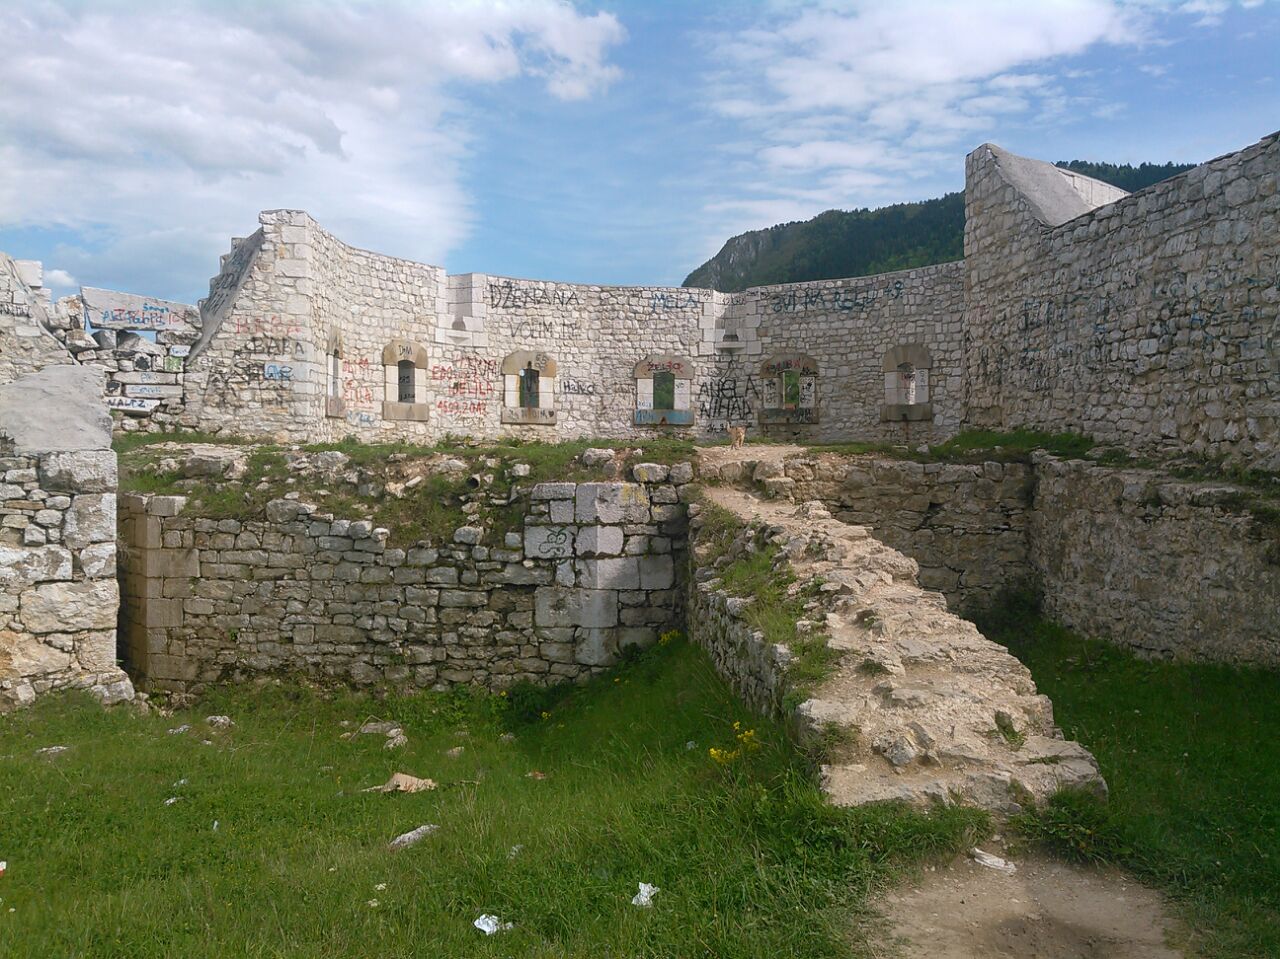 Ruins of the Bijela Tabija castle